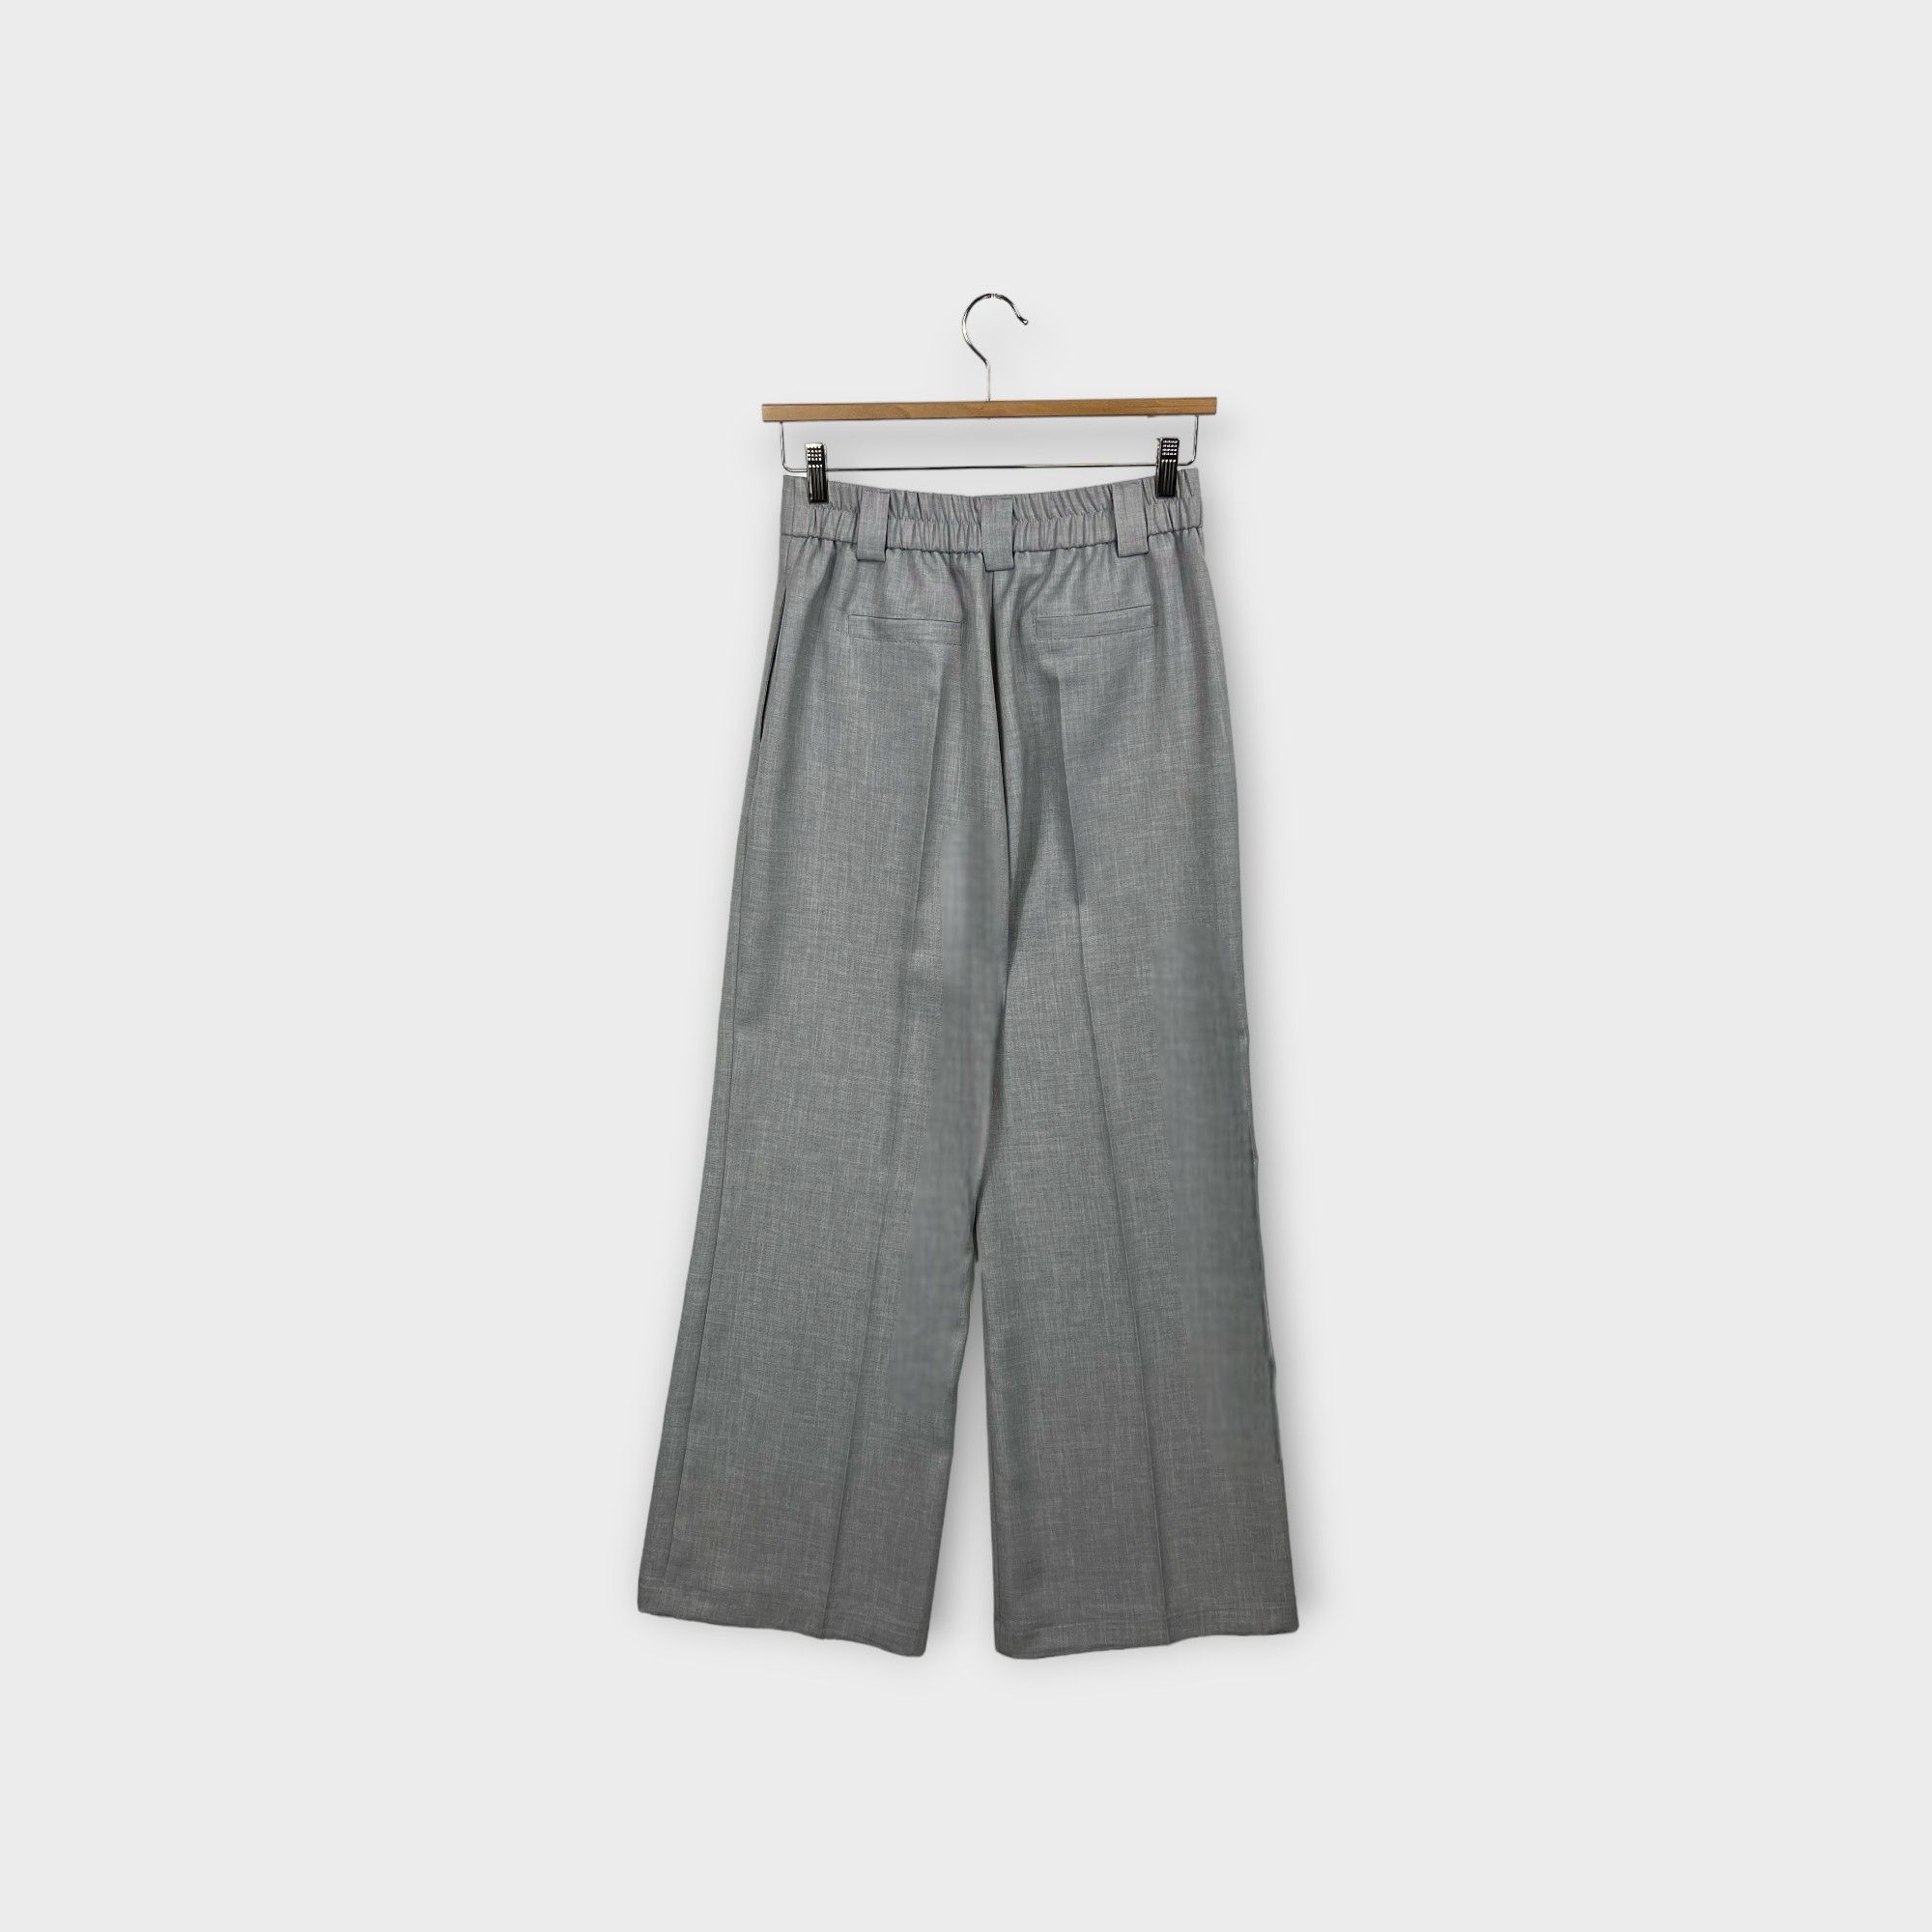 images/virtuemart/product/HELLEH pantaloni donna modello palazzo in tessuto tecnico diagonale colore grigio 2.jpg